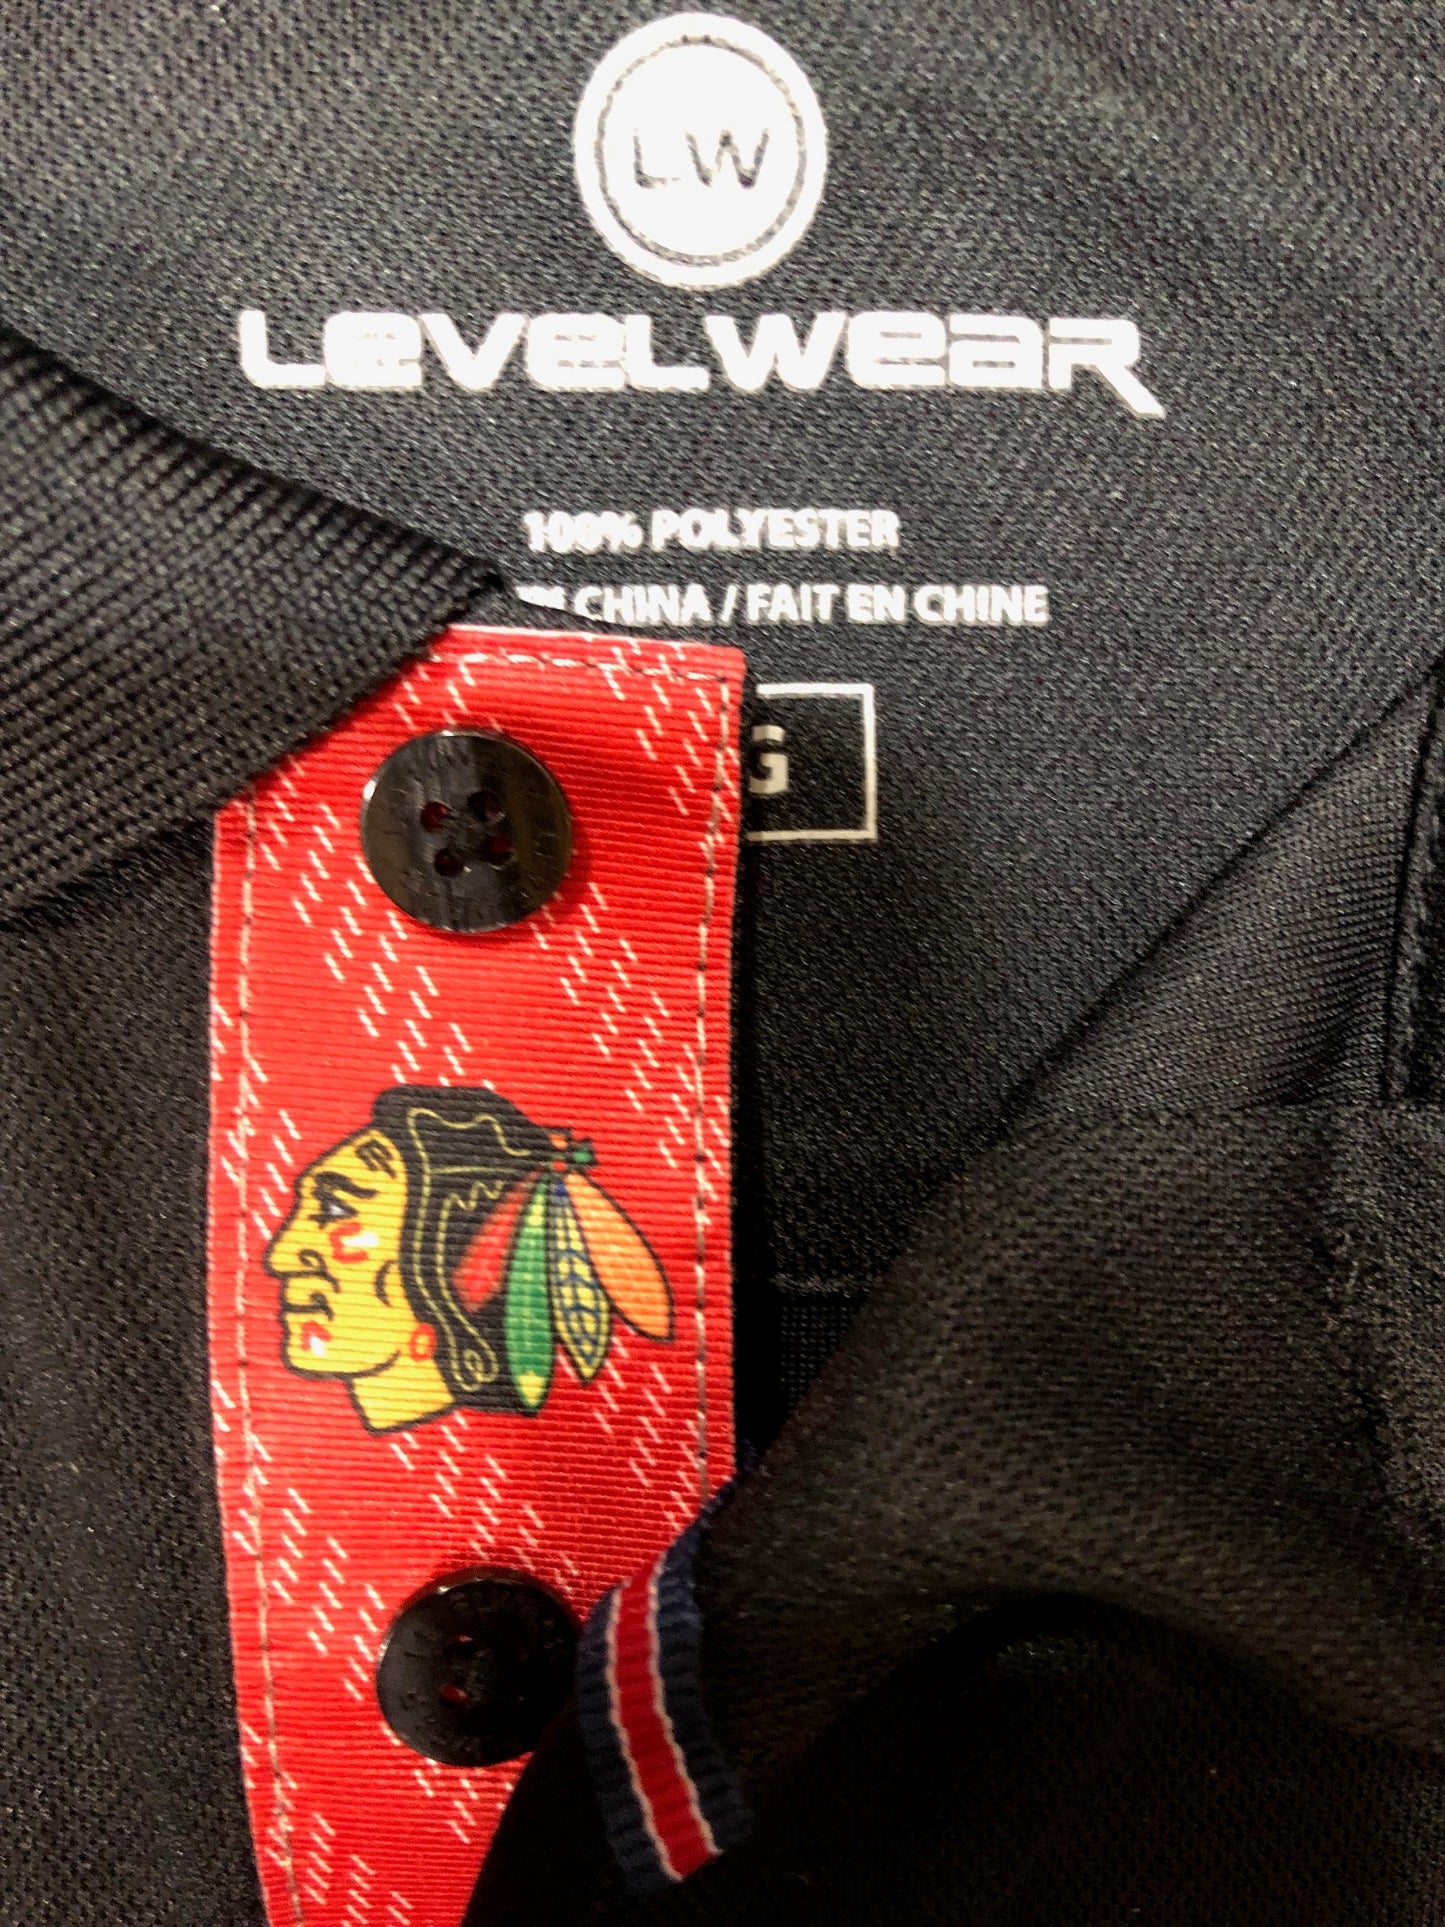 Chicago Blackhawks Skatelace Omaha Polo By Levelwear